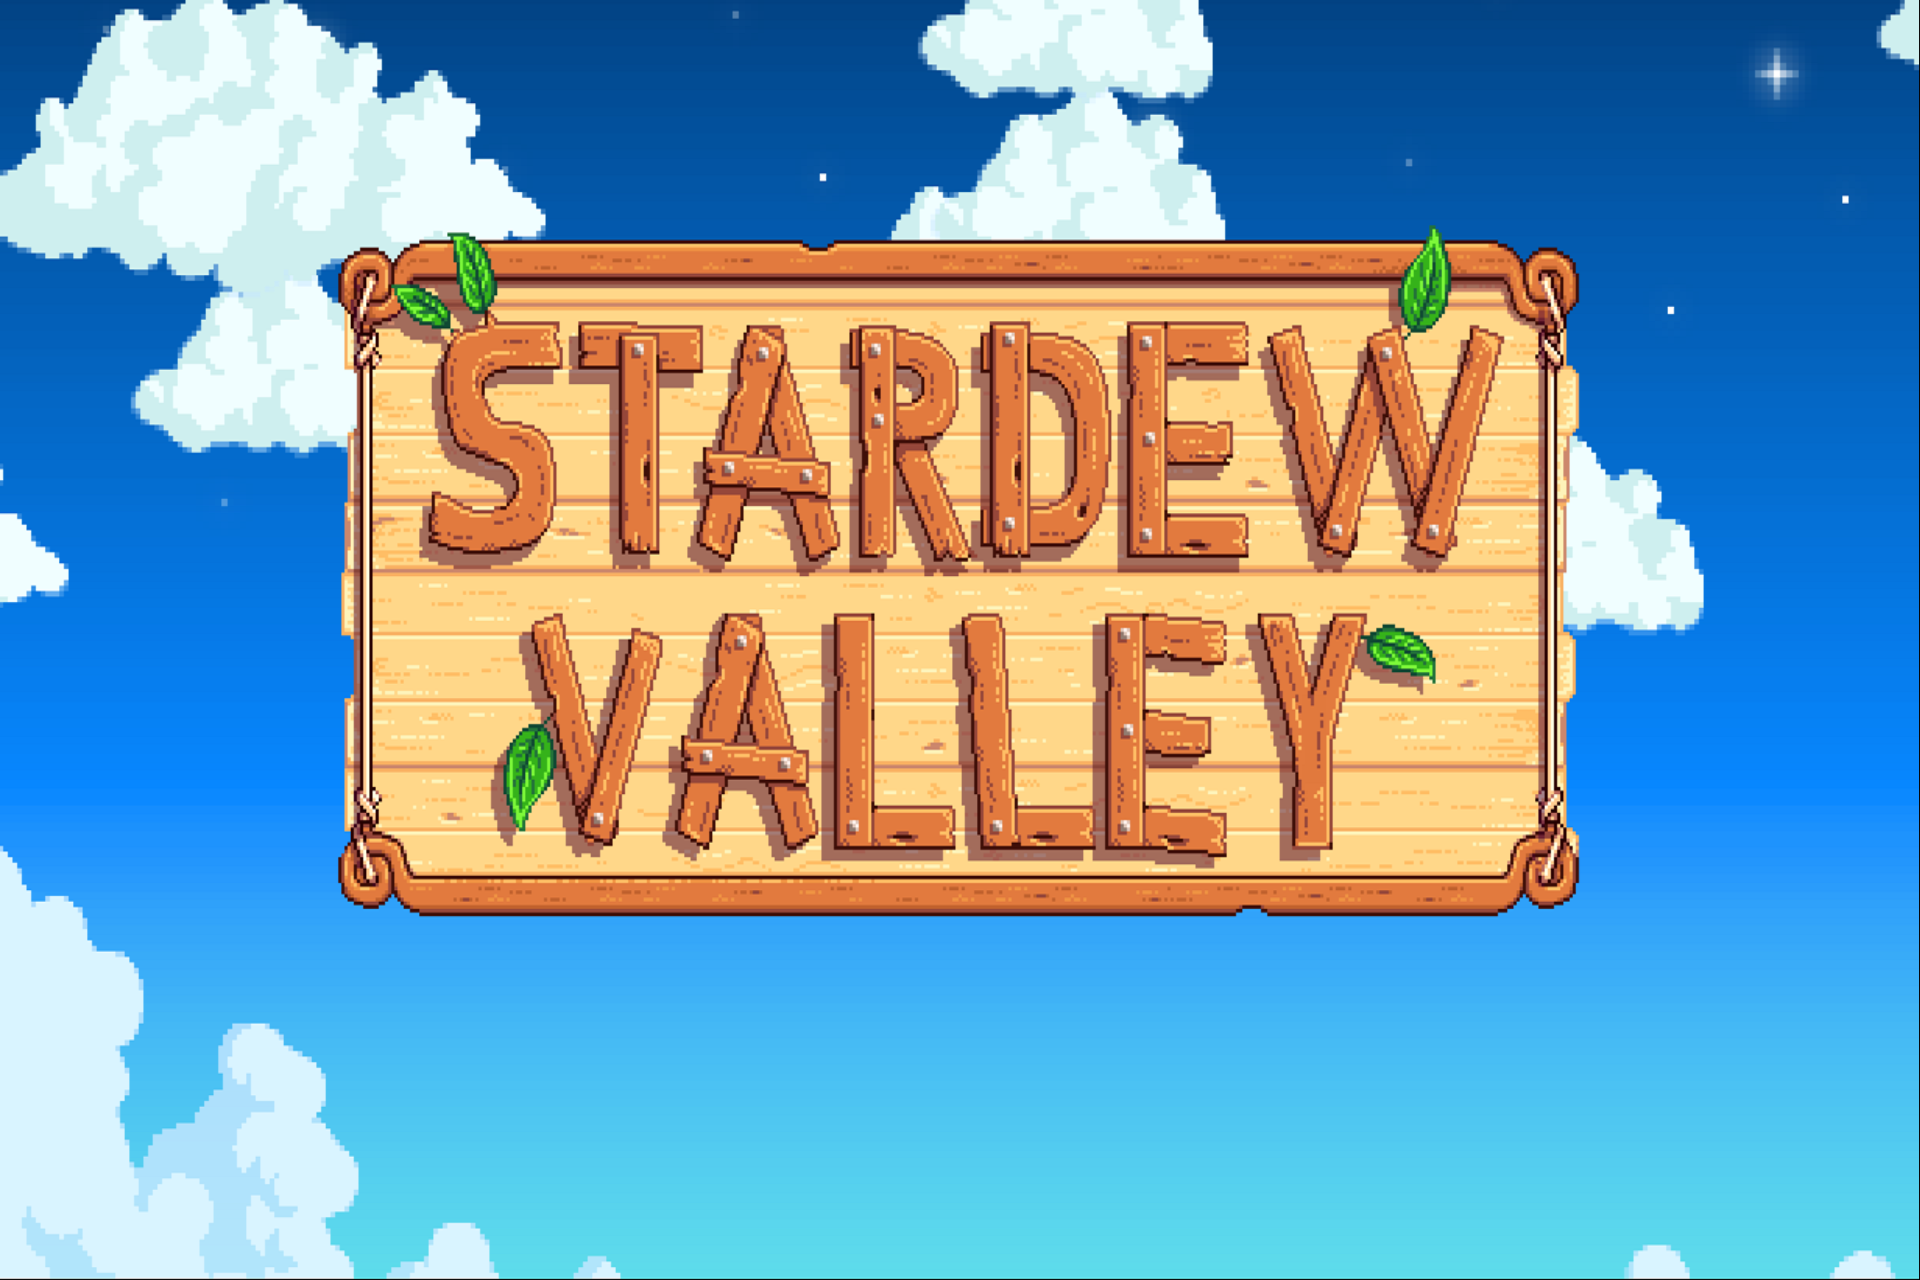 بازی موبایل Stardew Valley